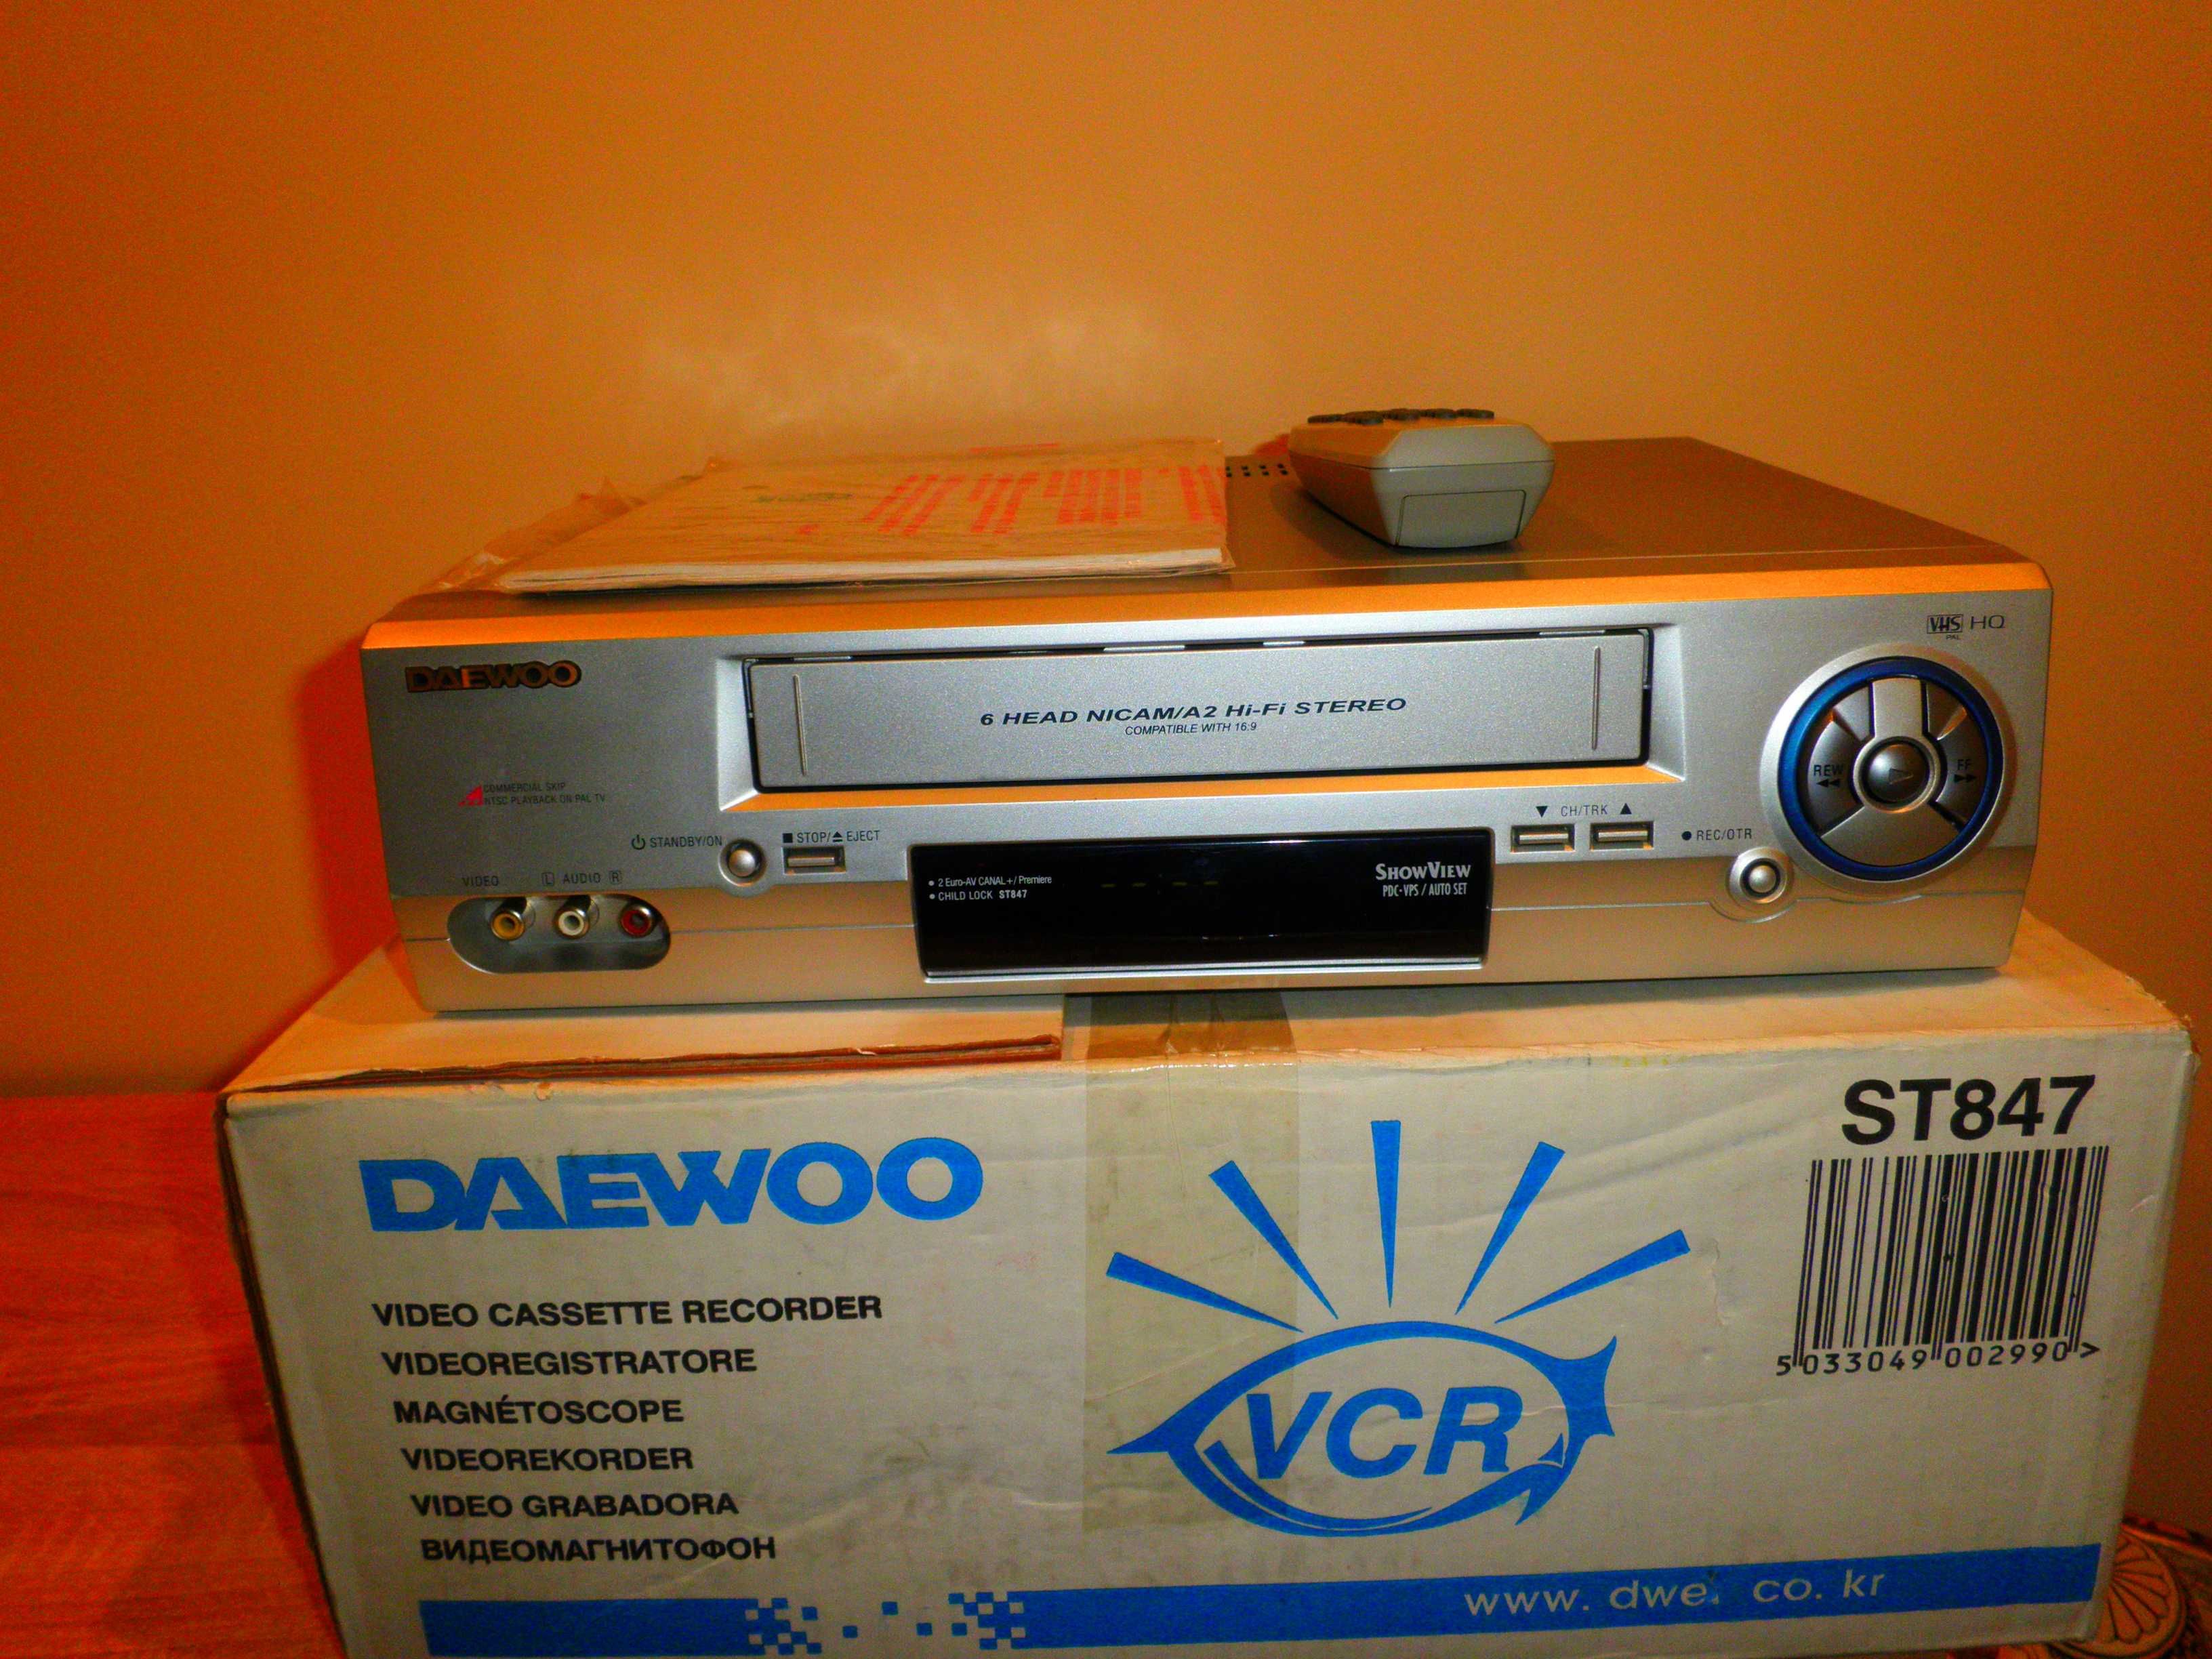 DAEWOO ST 847 Video Player